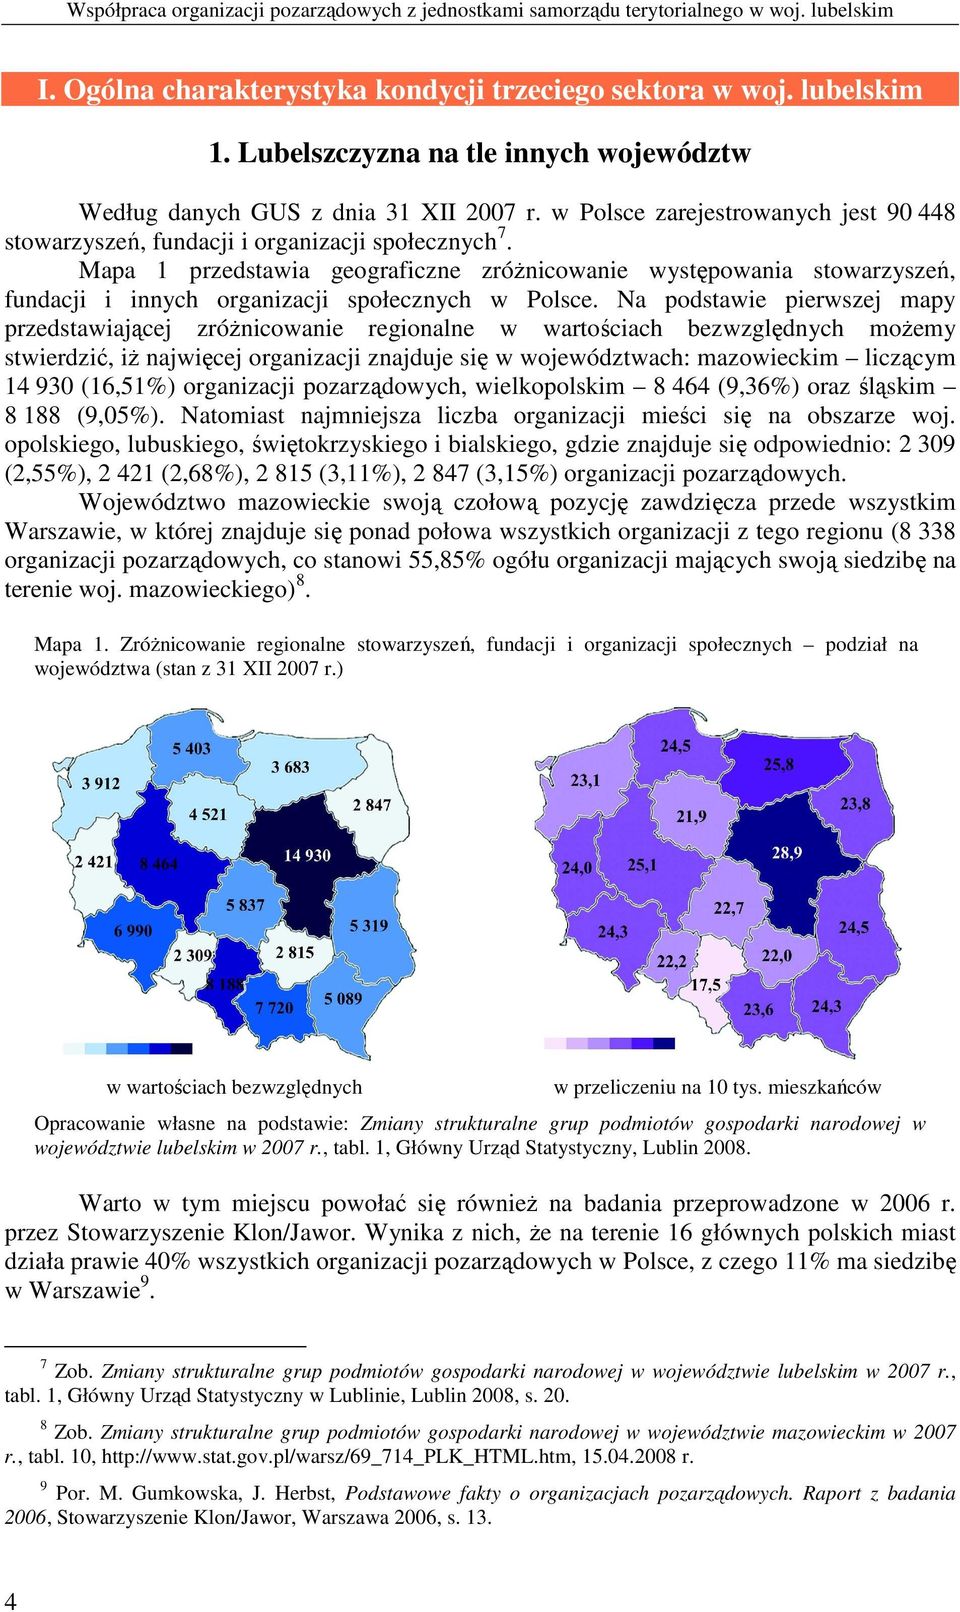 Mapa 1 przedstawia geograficzne zróŝnicowanie występowania stowarzyszeń, fundacji i innych organizacji społecznych w Polsce.